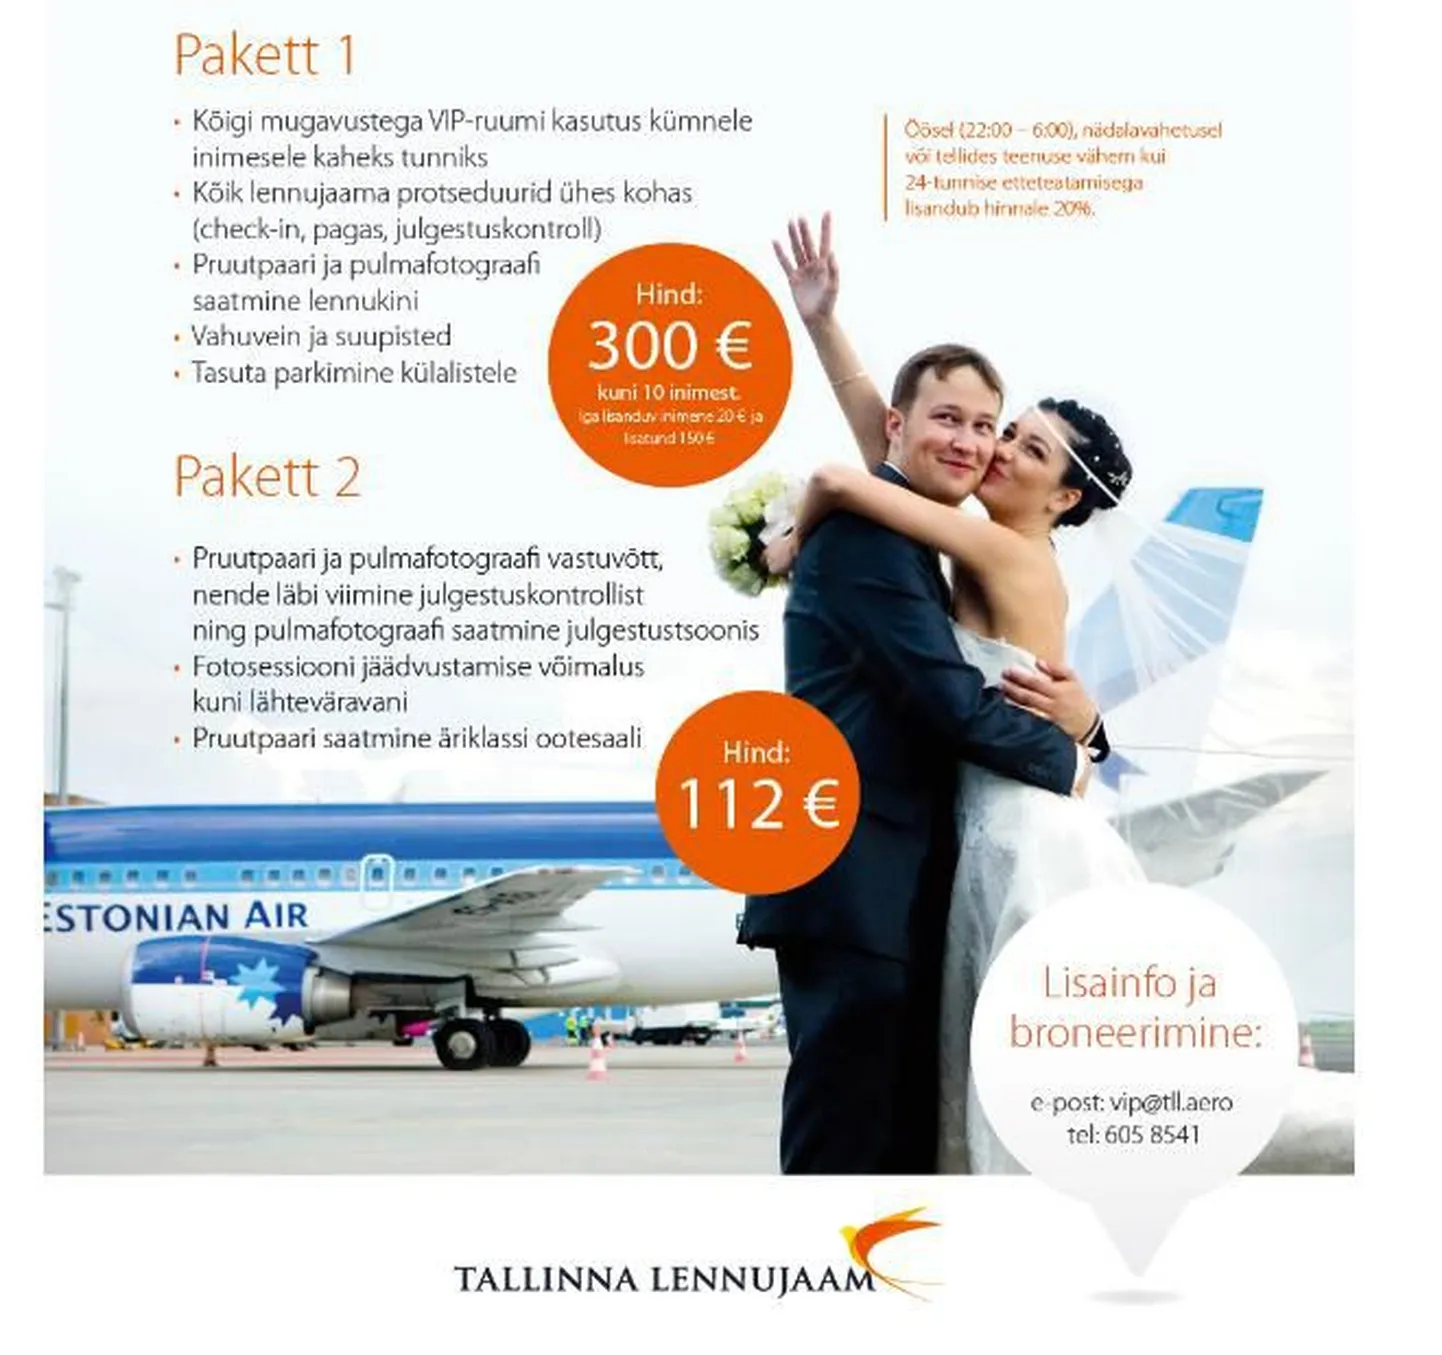 Таллиннский аэропорт предлагает особую услугу для молодоженов.